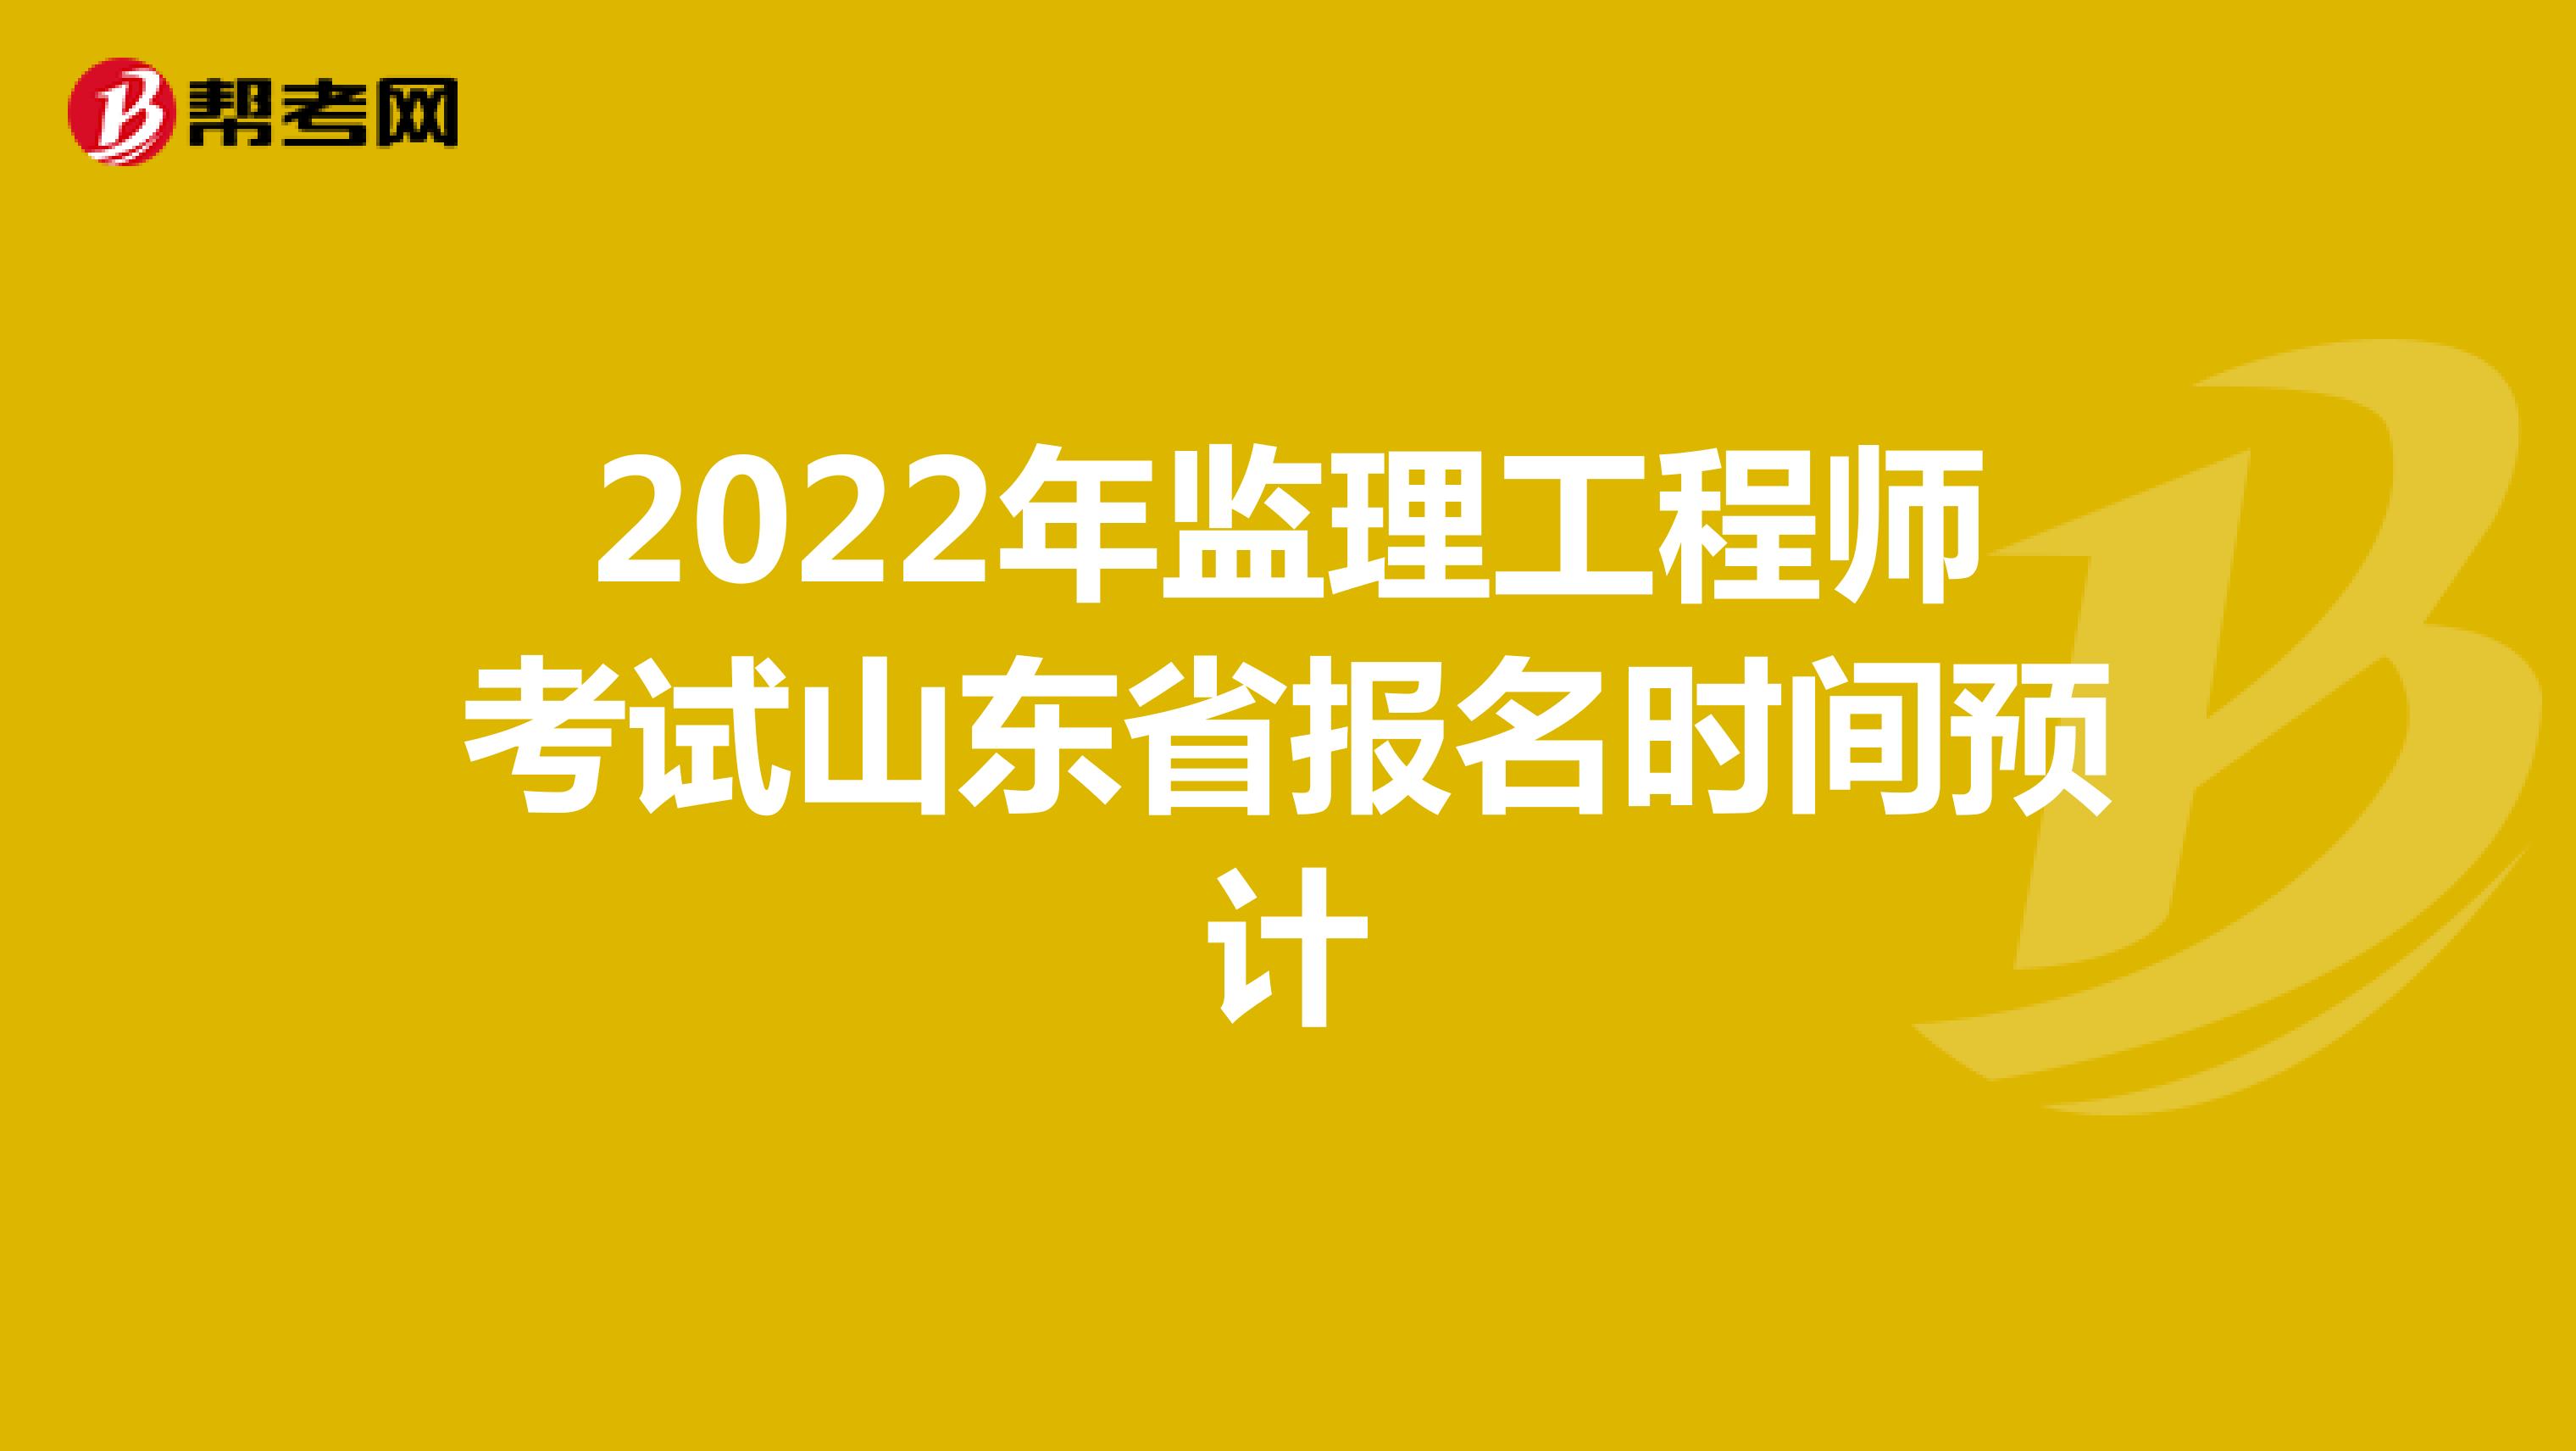 2022年监理工程师考试山东省报名时间预计